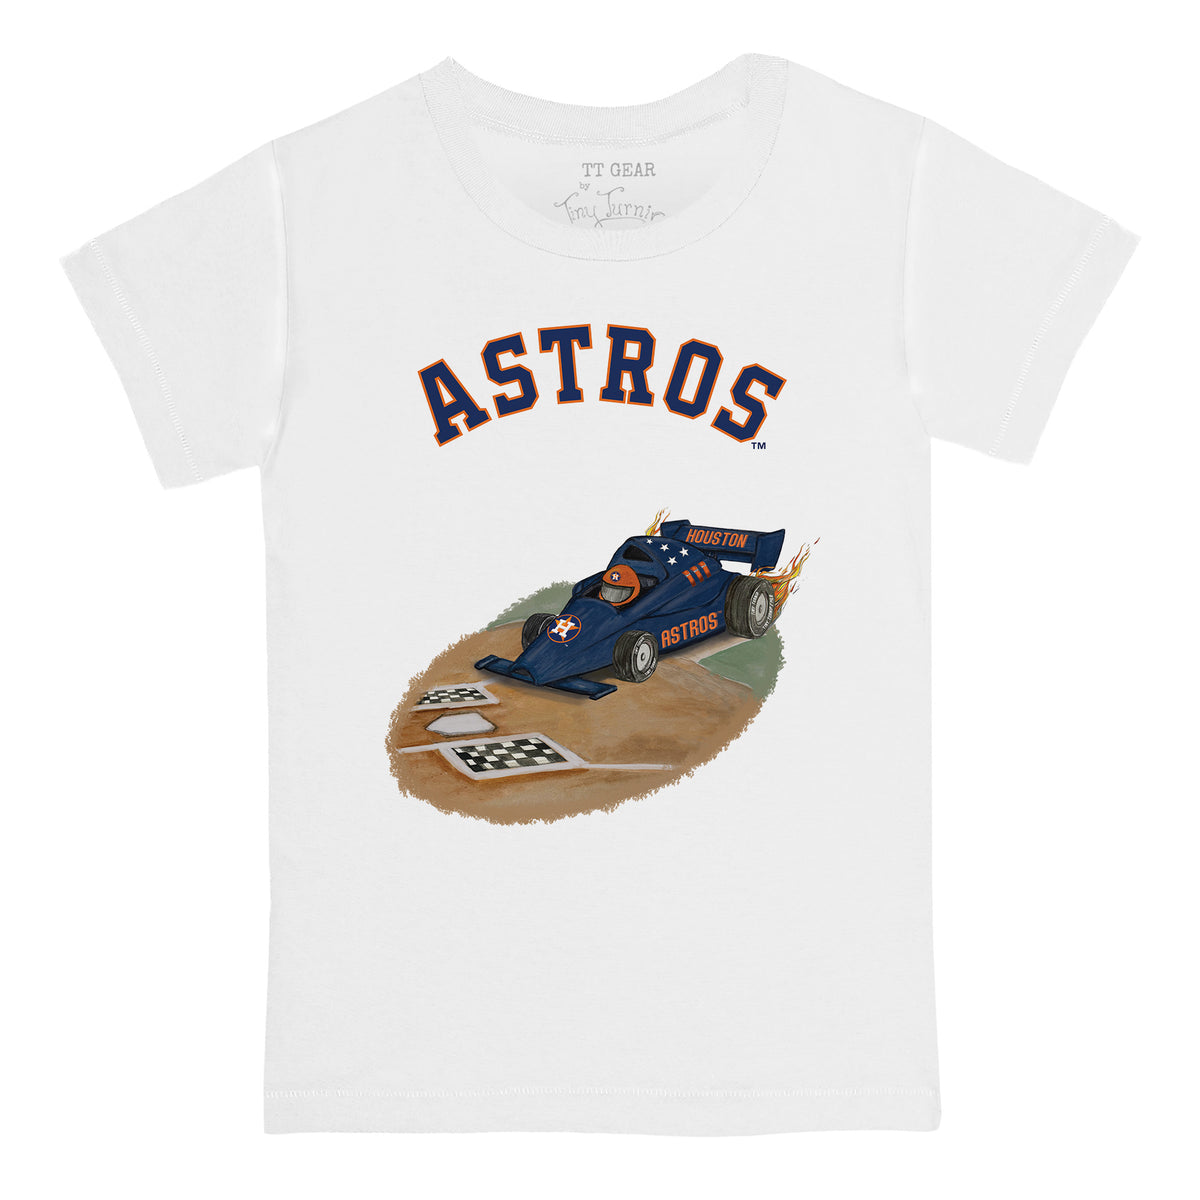 Houston Astros Race Car Tee Shirt